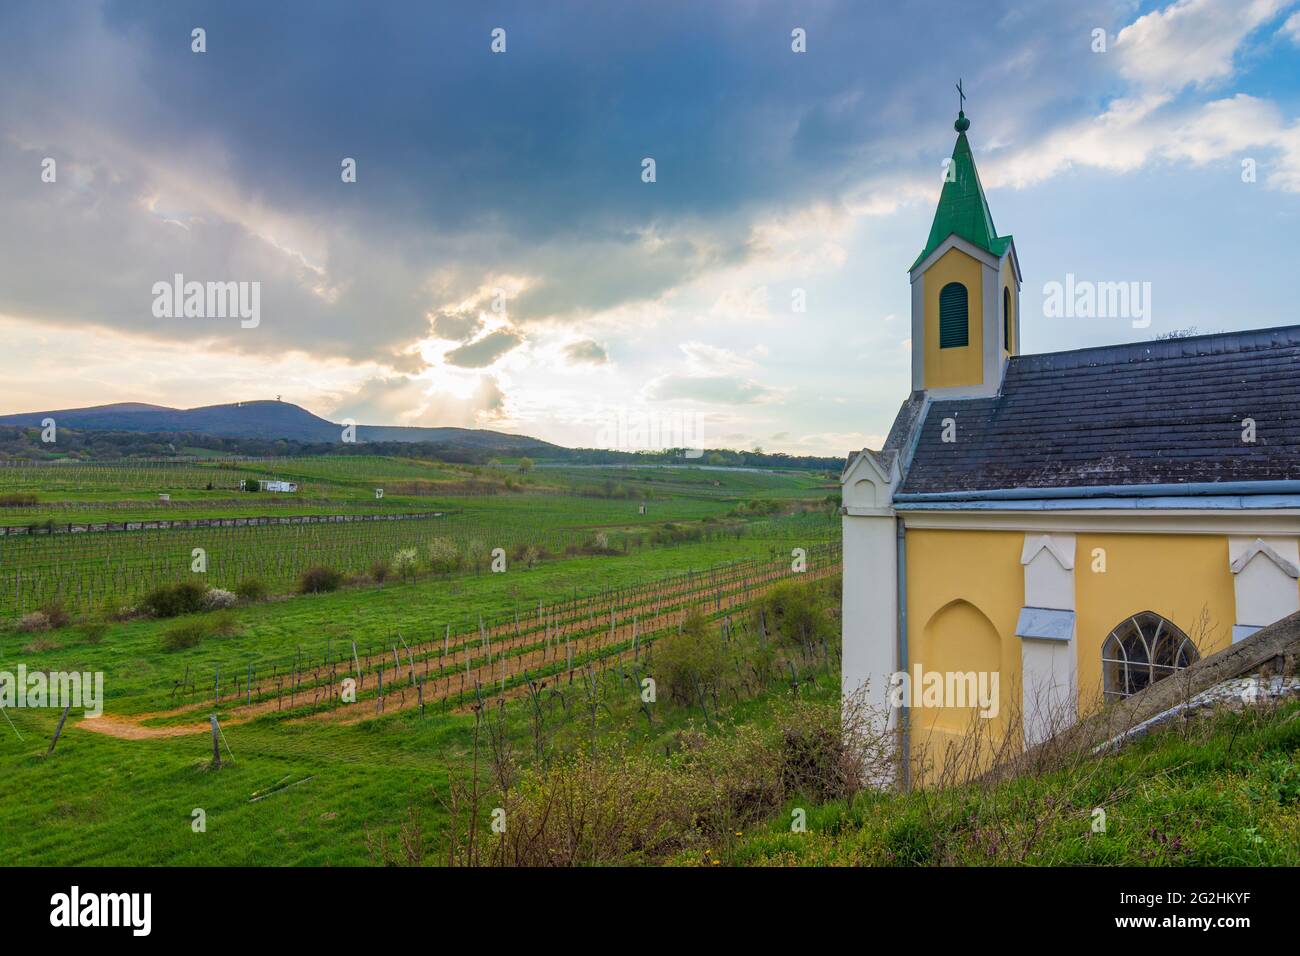 Guntramsdorf, chapel Weingartenkapelle, vineyard, mountain Anninger in Wienerwald / Vienna Woods, Niederösterreich / Lower Austria, Austria Stock Photo